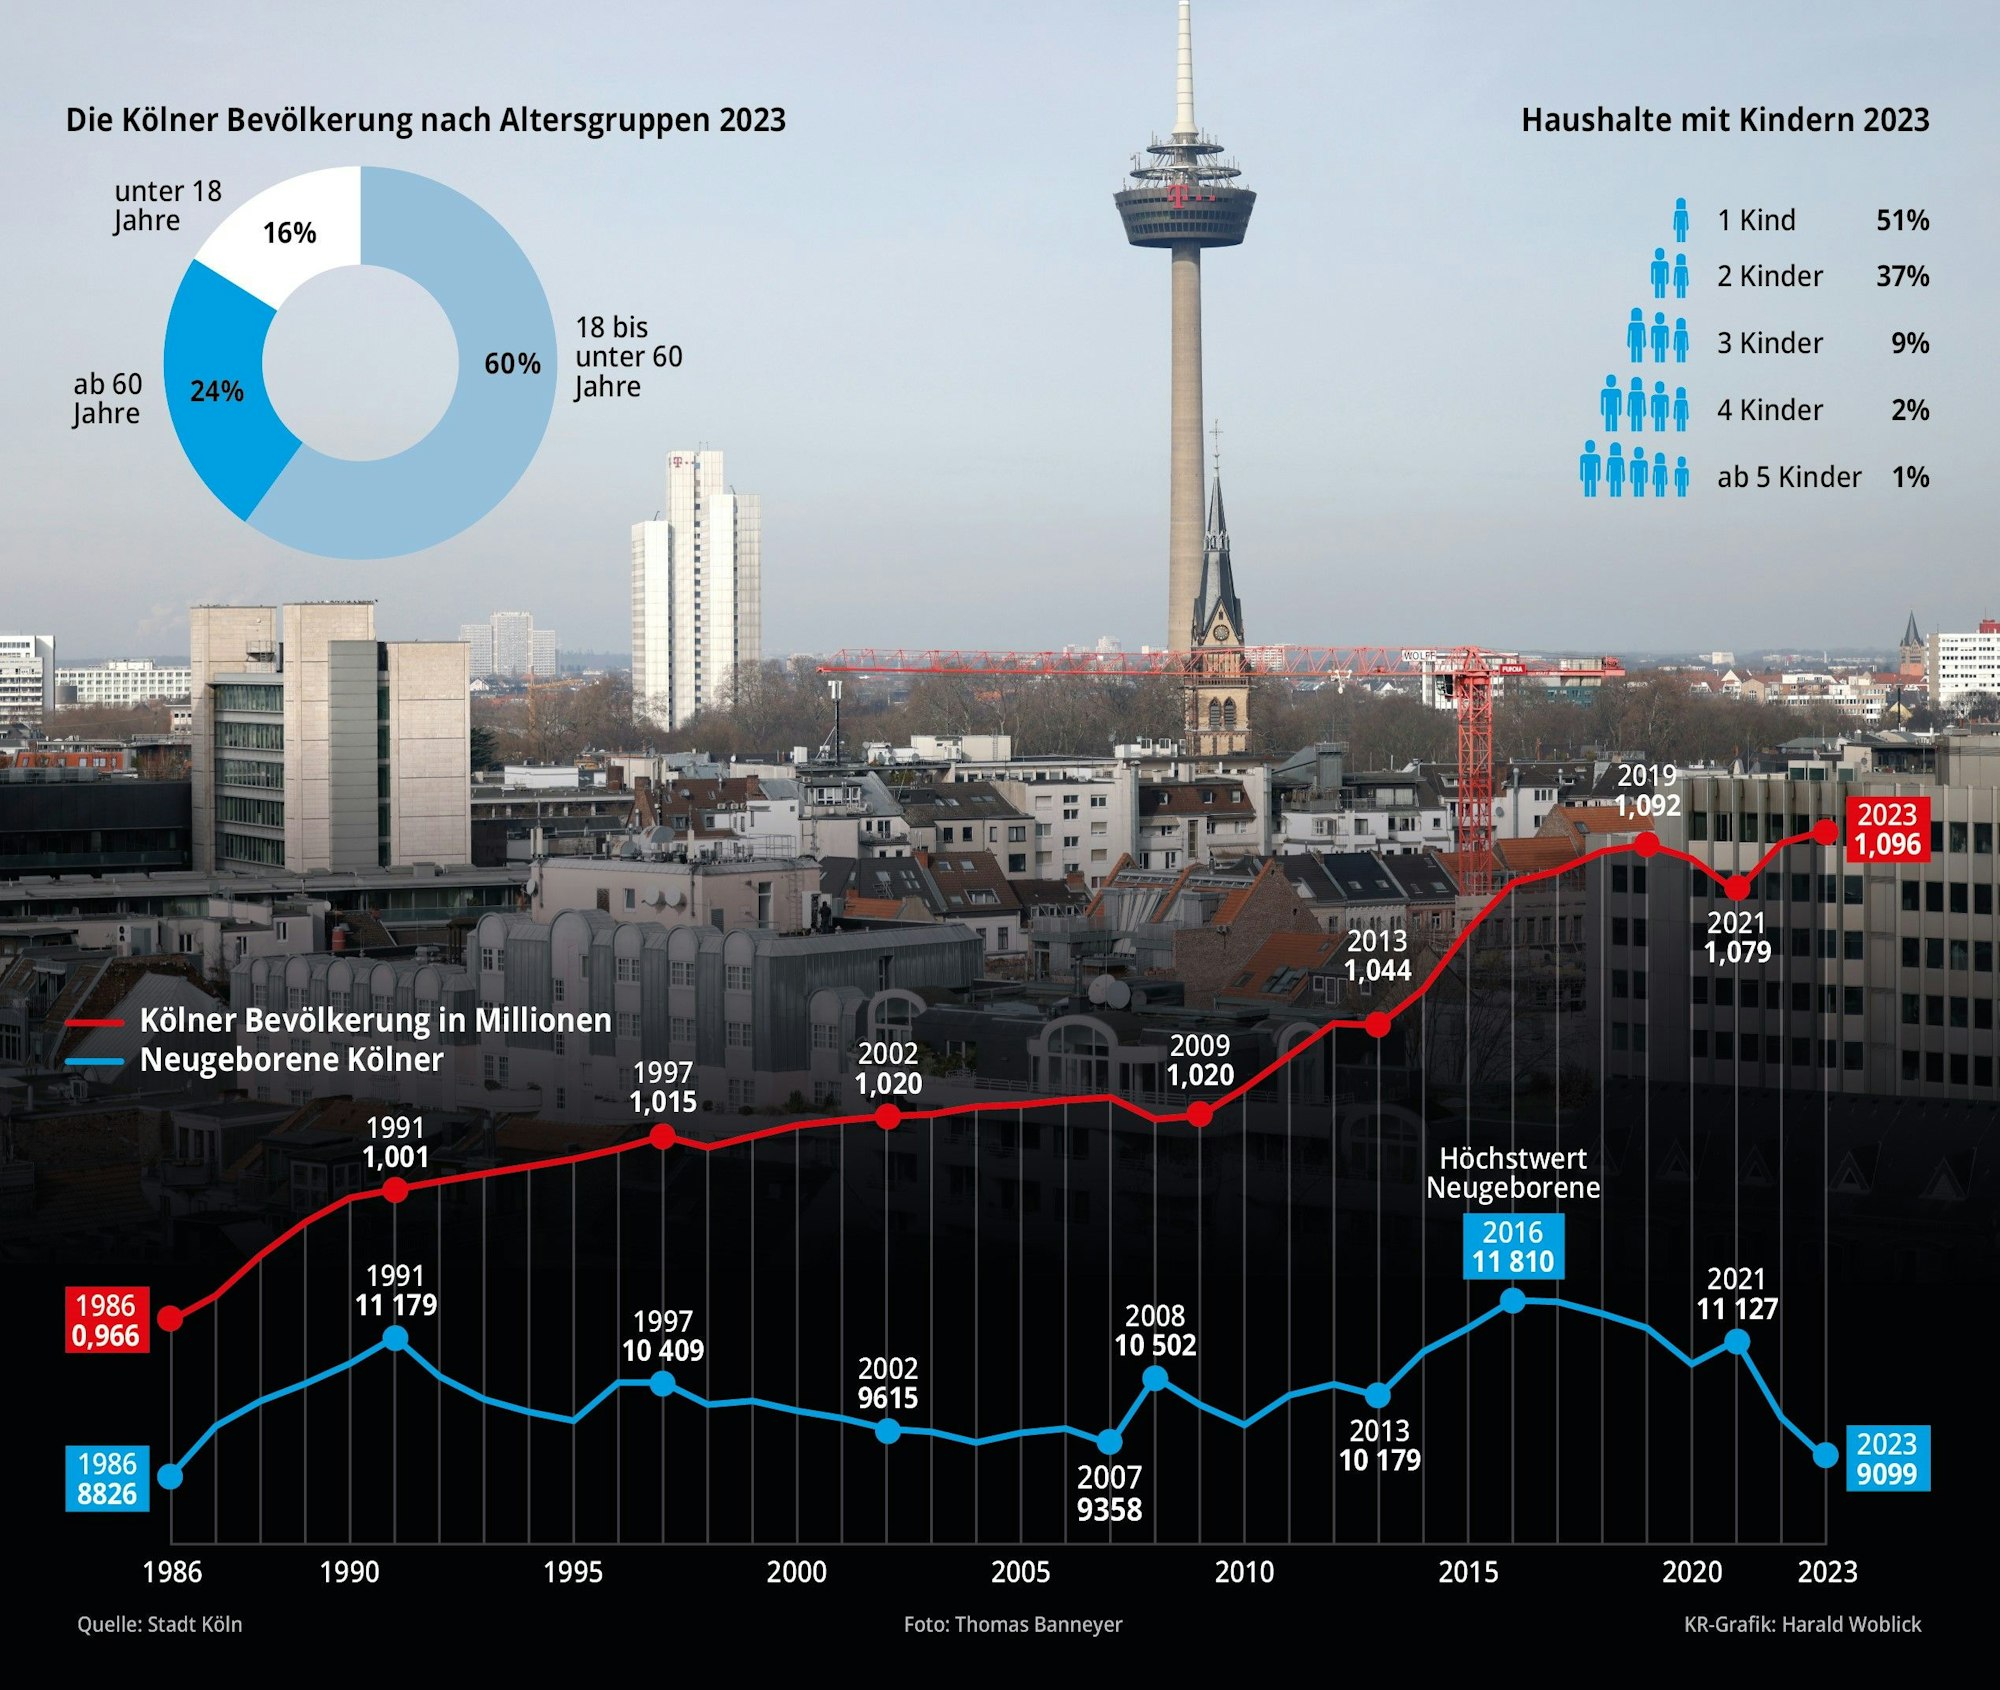 Die Grafik zeigt die Bevölkerungsentwicklung in Köln